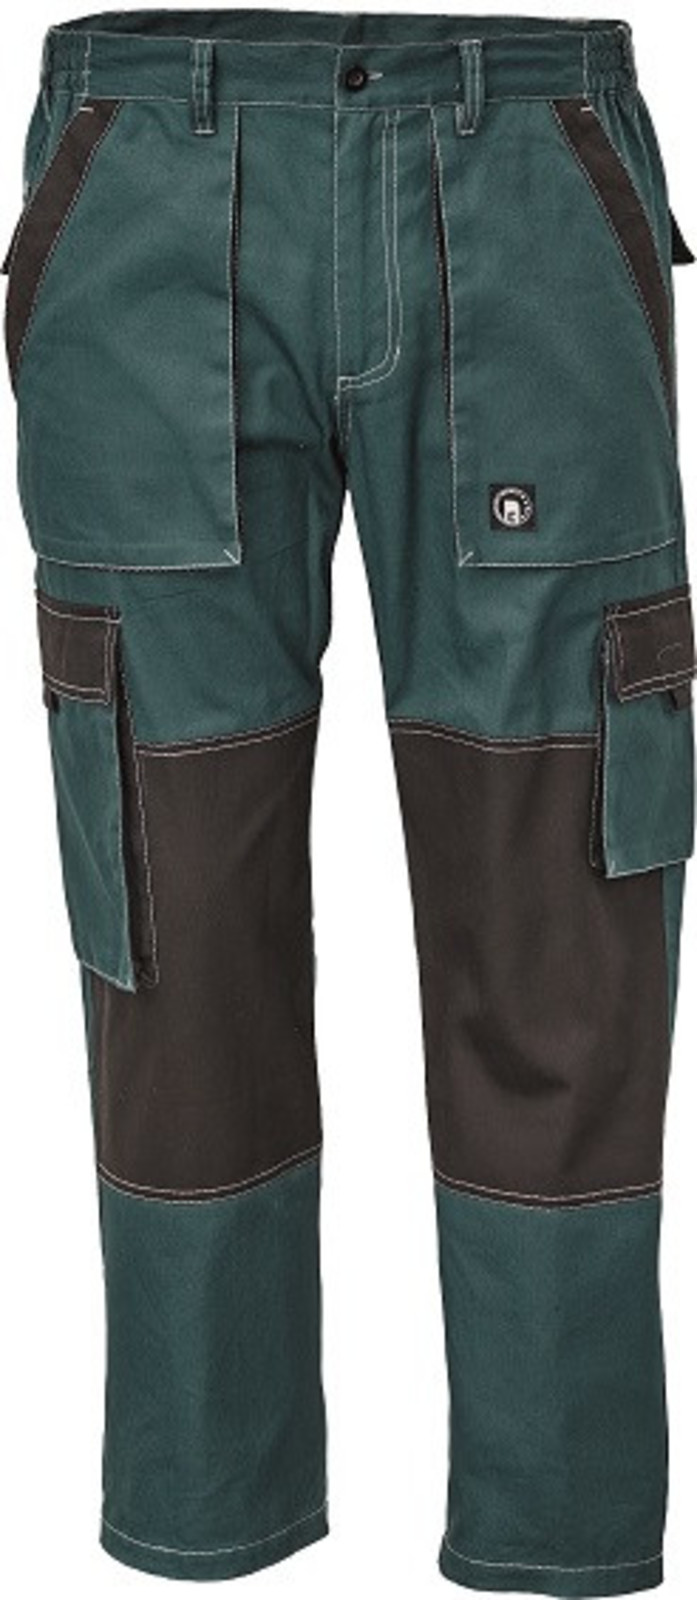 Tenšie bavlnené montérky Max Summer - veľkosť: 48, farba: zelená/čierna